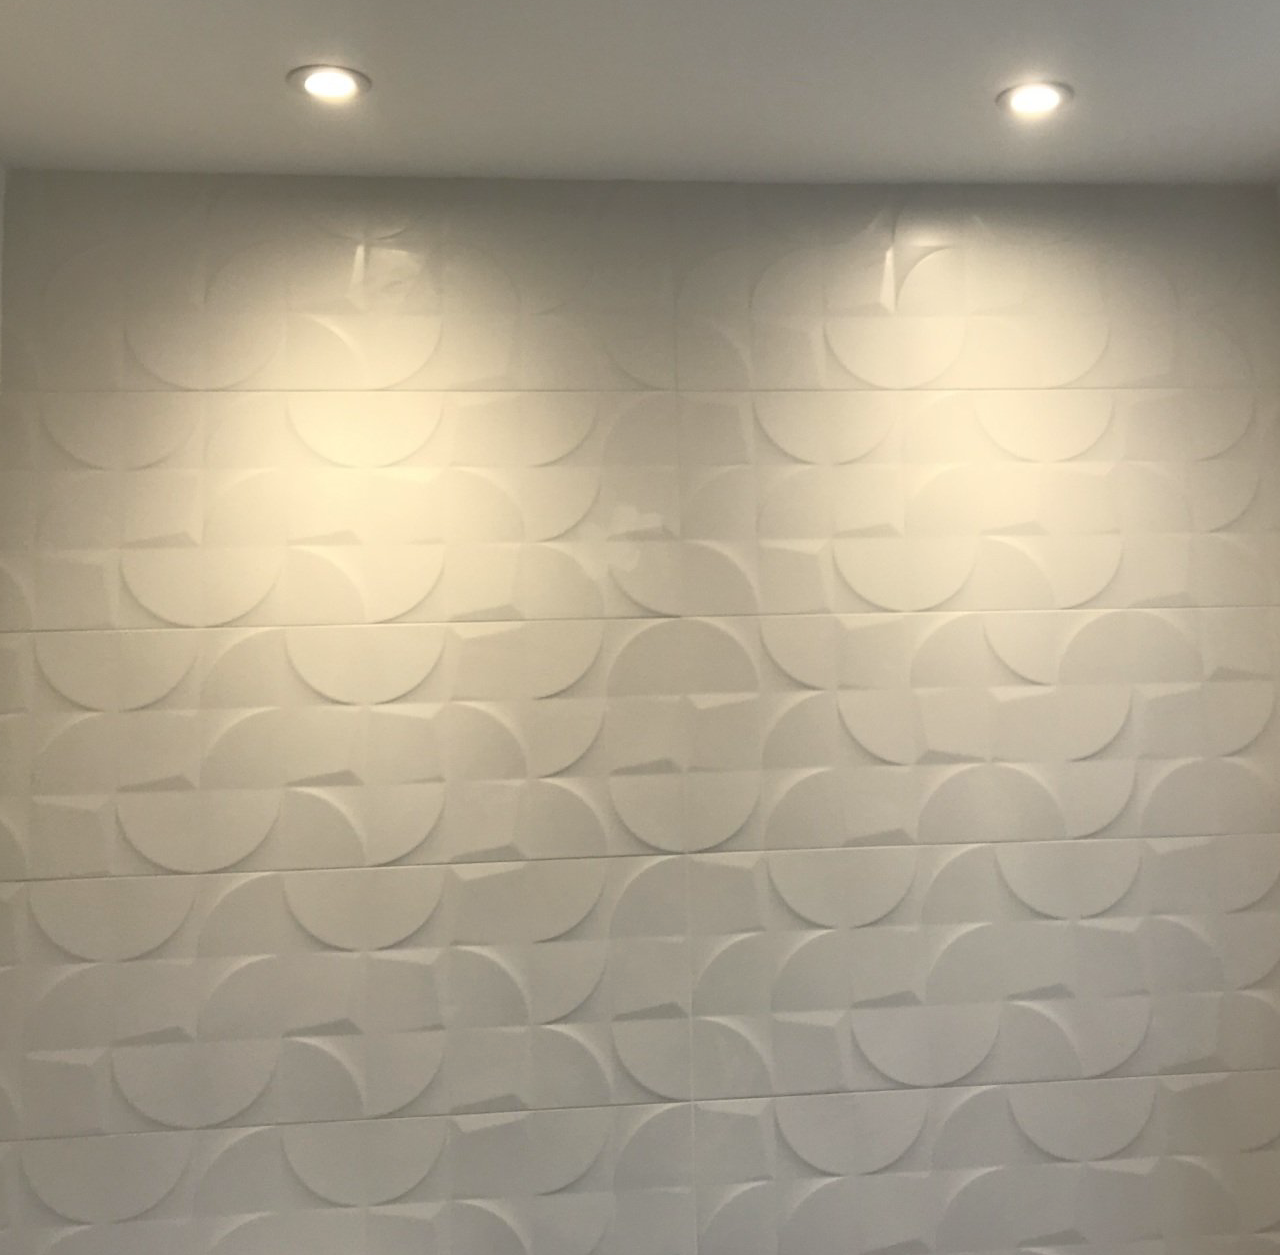 Textured Wall lighting - downlighting textured tiles